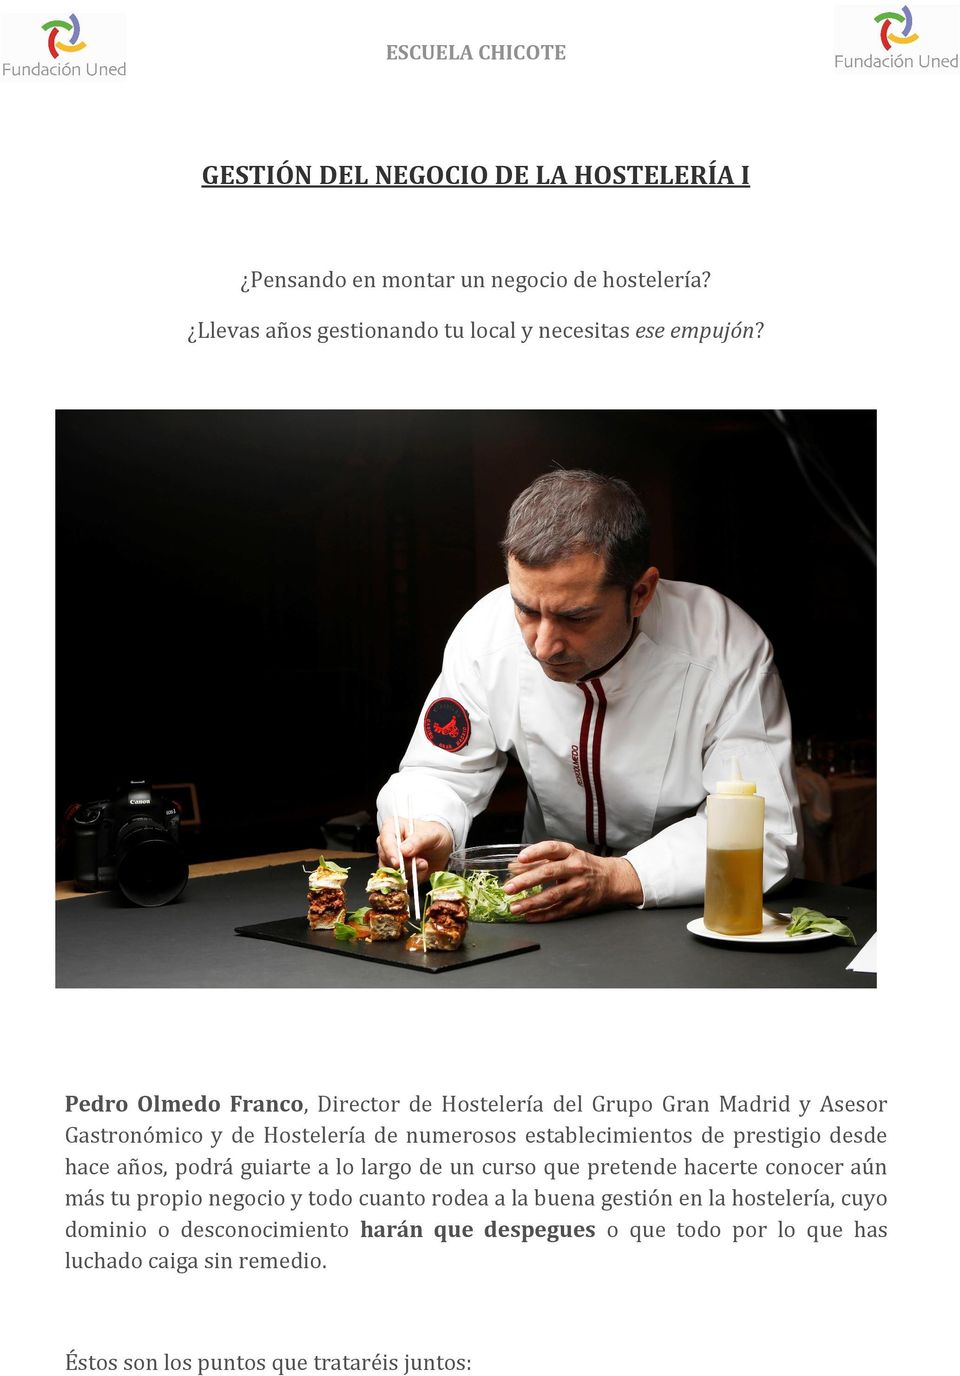 Pedro Olmedo Franco, Director de Hostelería del Grupo Gran Madrid y Asesor Gastronómico y de Hostelería de numerosos establecimientos de prestigio desde